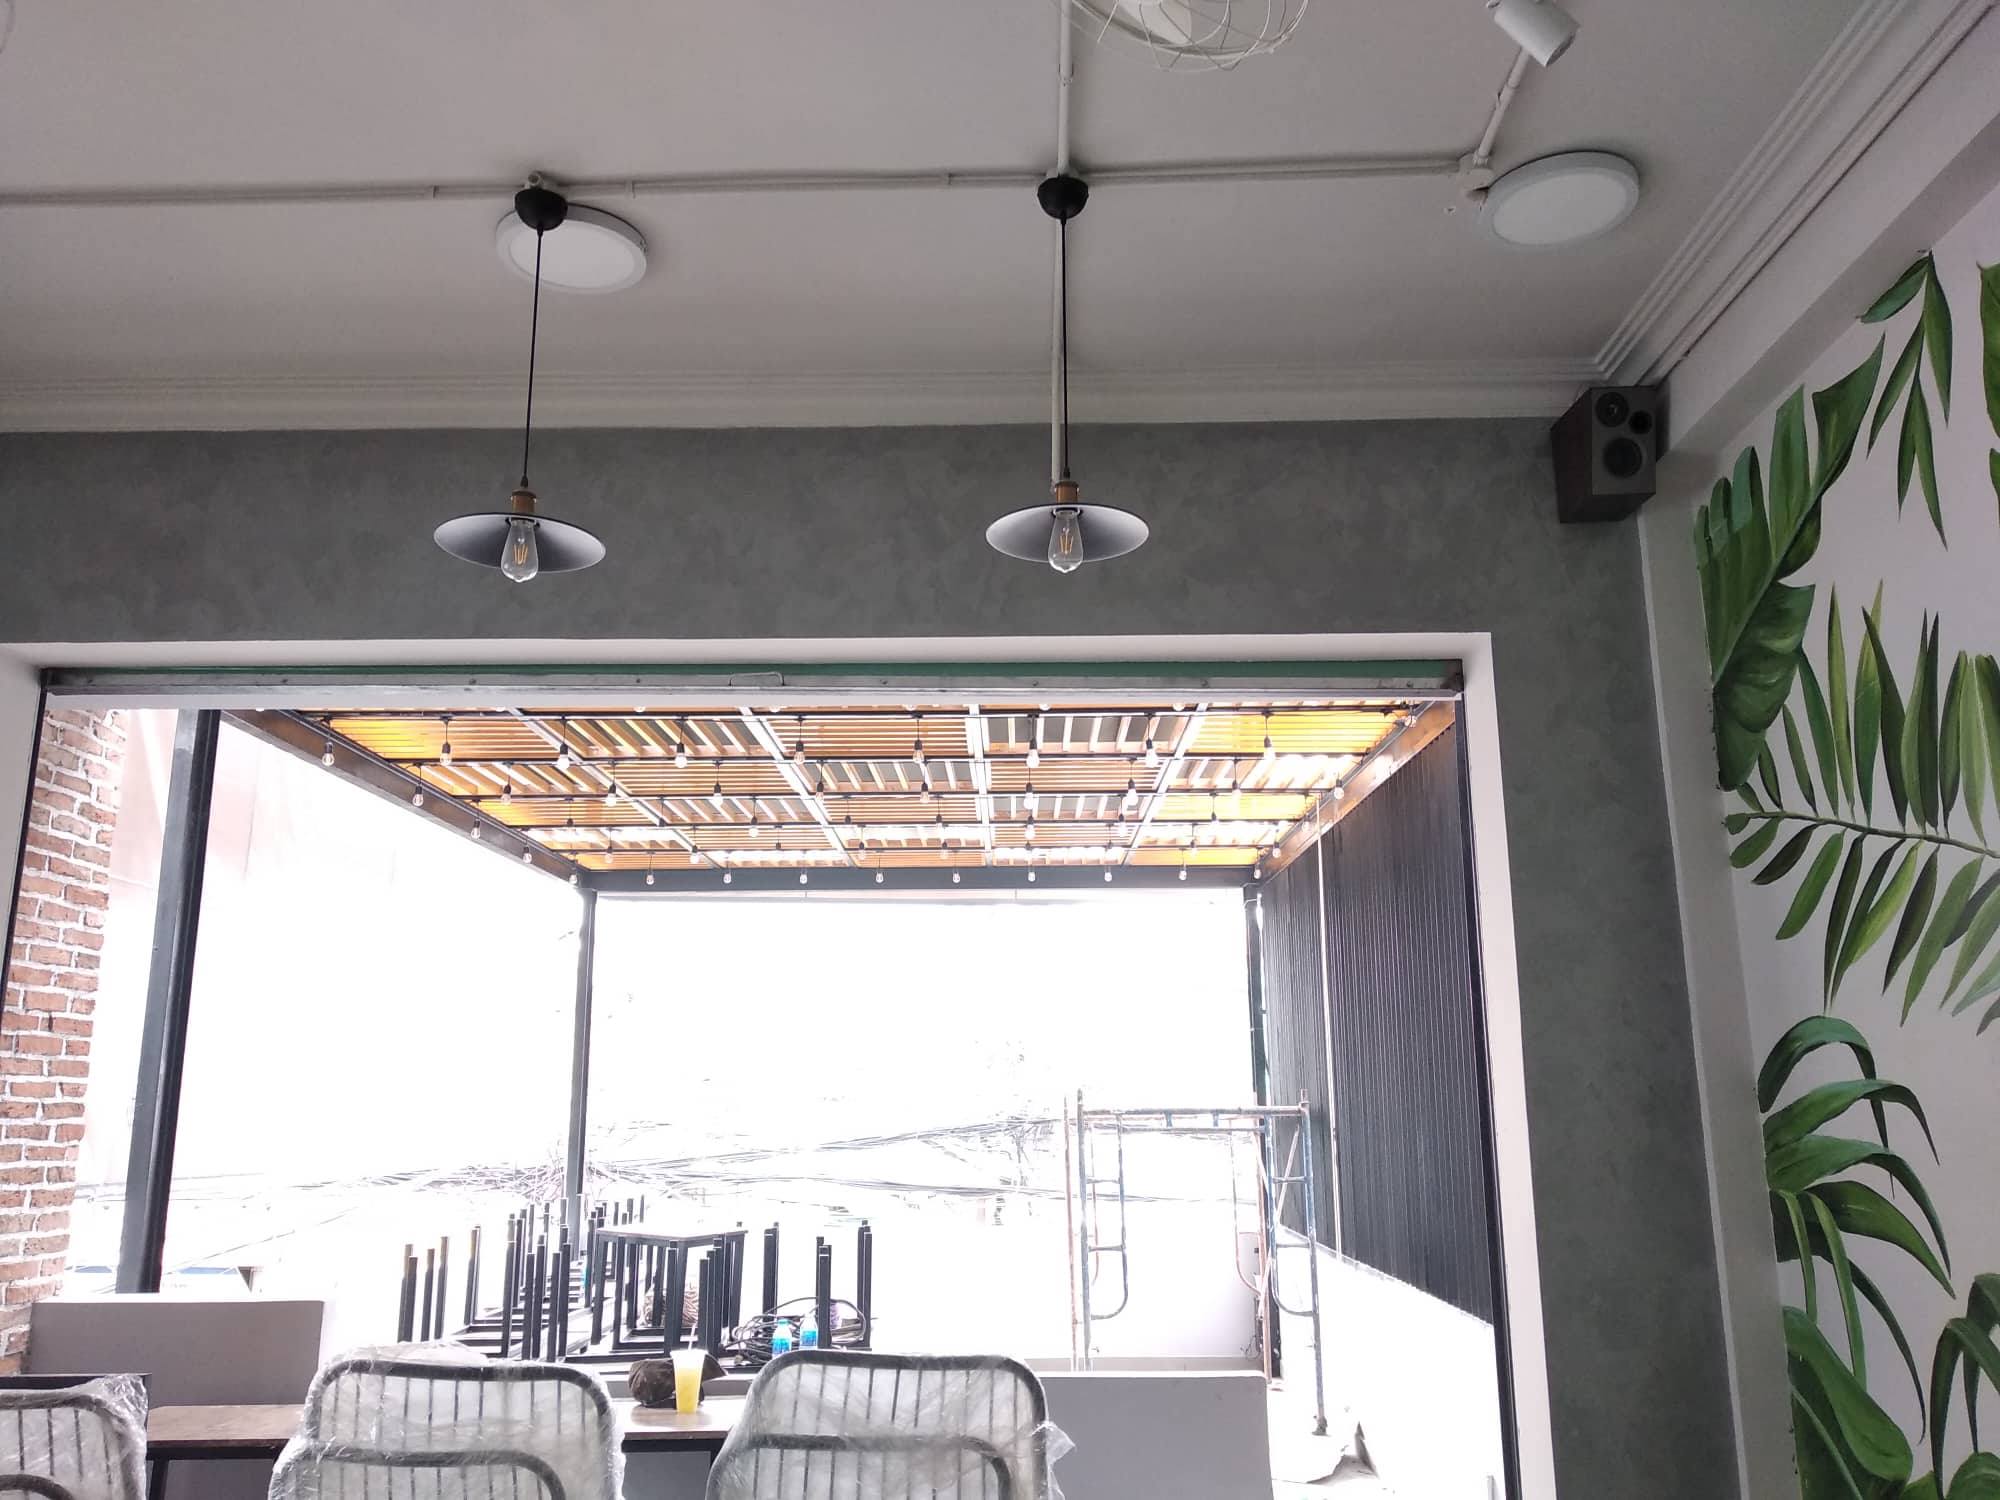 Loa treo quán Cafe được thiết kế hiện đại, bắt mắt giúp tạo điểm nhấn cho không gian của quán